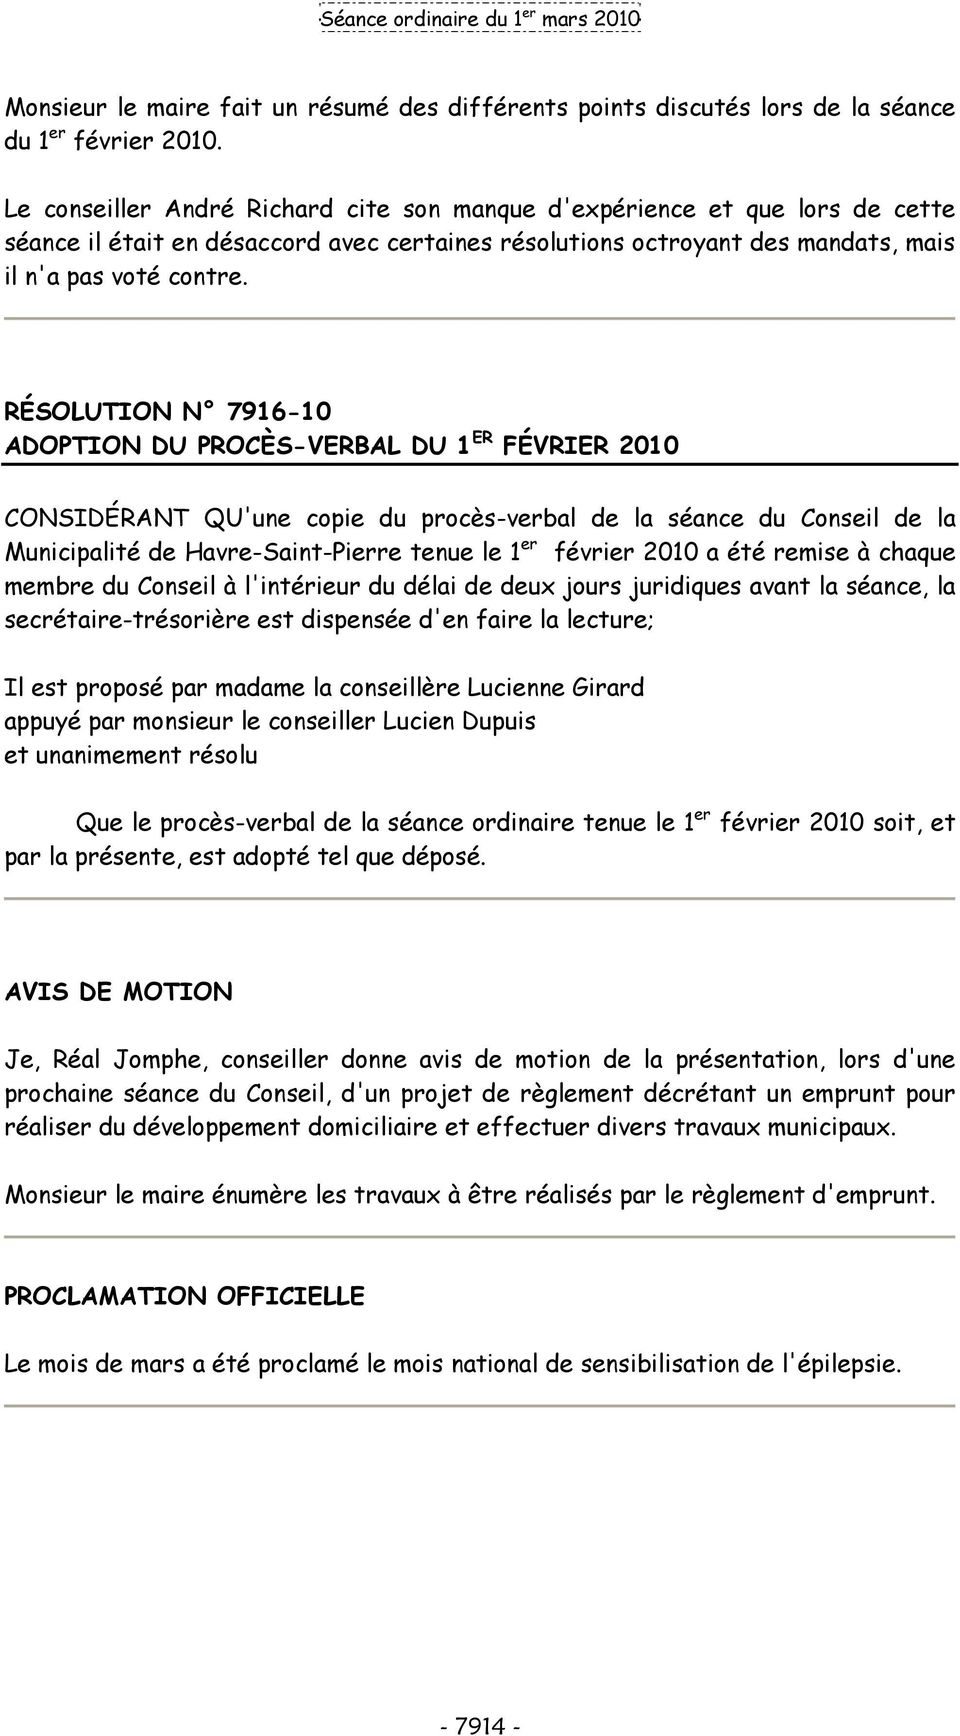 RÉSOLUTION N 7916-10 ADOPTION DU PROCÈS-VERBAL DU 1 ER FÉVRIER 2010 CONSIDÉRANT QU'une copie du procès-verbal de la séance du Conseil de la Municipalité de Havre-Saint-Pierre tenue le 1 er février